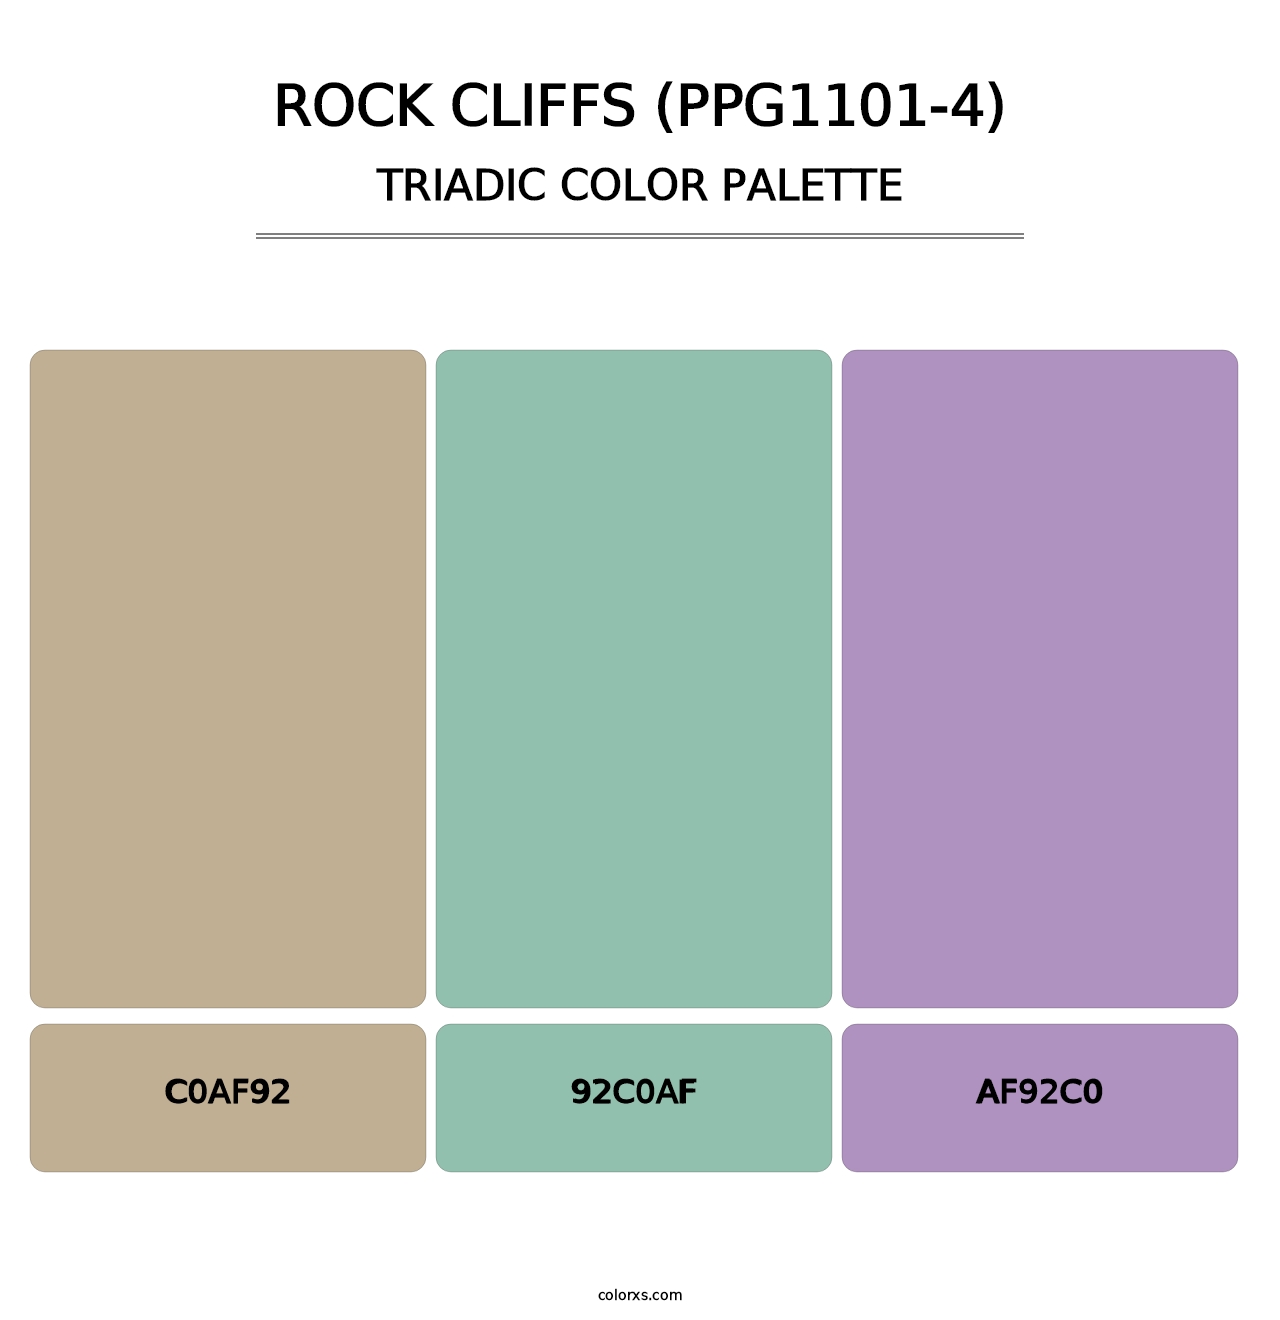 Rock Cliffs (PPG1101-4) - Triadic Color Palette